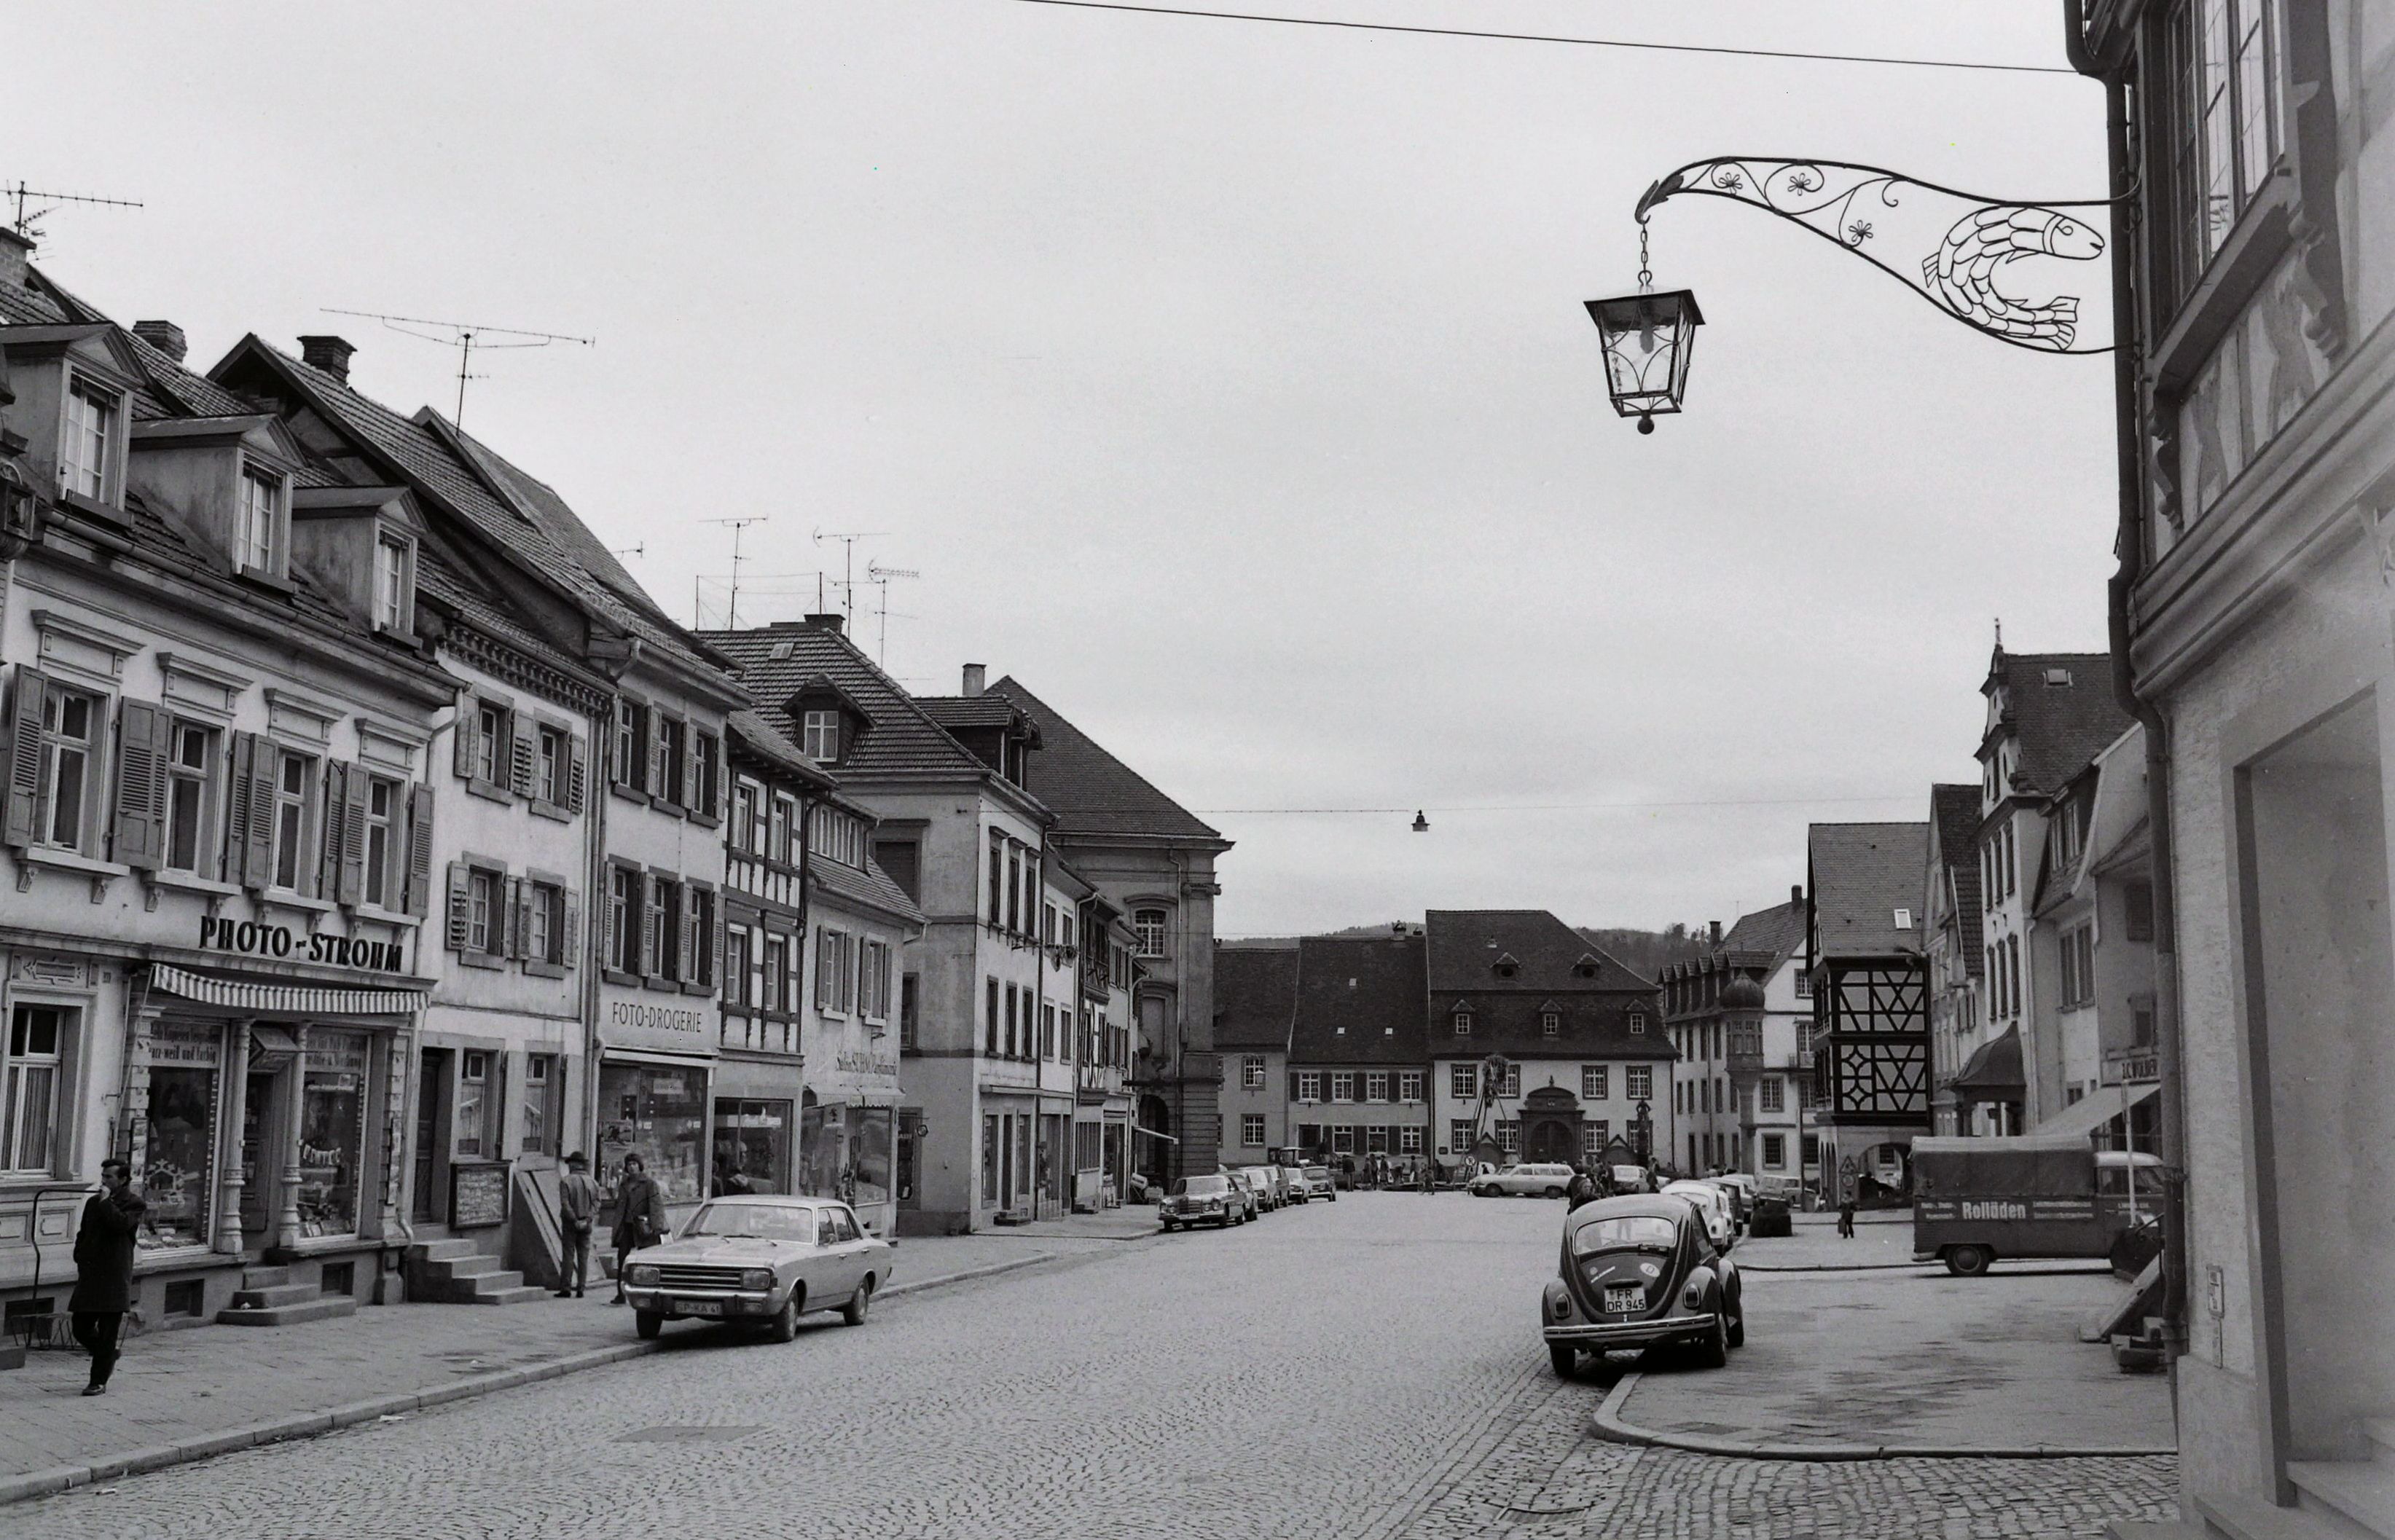 Blick Richtung Marktplatz, Neue Lampe mit Fisch - Emblem, Bilder von Friedrich Strohm